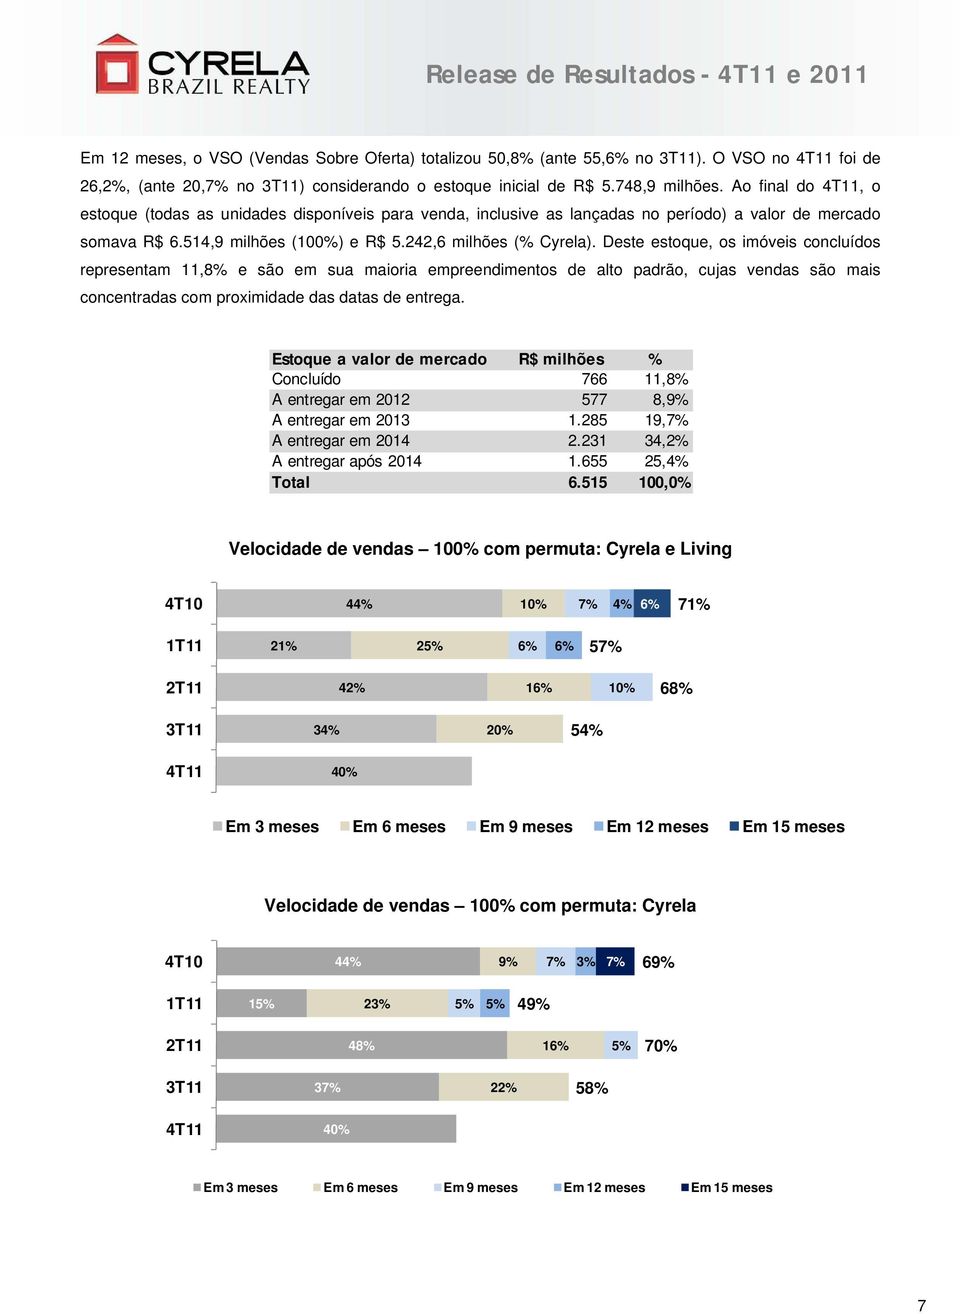 Deste estoque, os imóveis concluídos representam 11,8% e são em sua maioria empreendimentos de alto padrão, cujas vendas são mais concentradas com proximidade das datas de entrega.